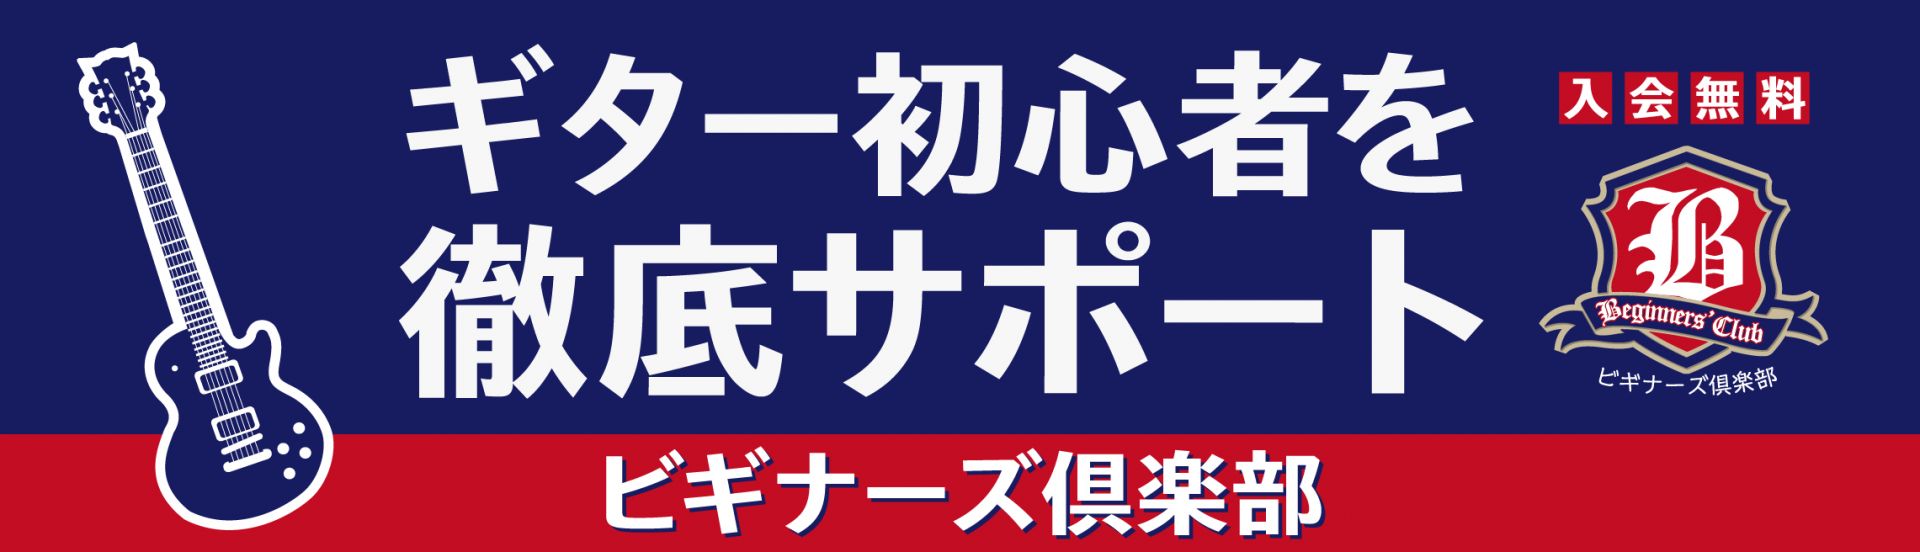 [https://twitter.com/shima_yachiyo_m::title=] [https://www.shimamura.co.jp/shop/yachiyo-midorigaoka/information/20211124/4510:title=] ビギナーズ倶楽部セミナーでは、ギ […]